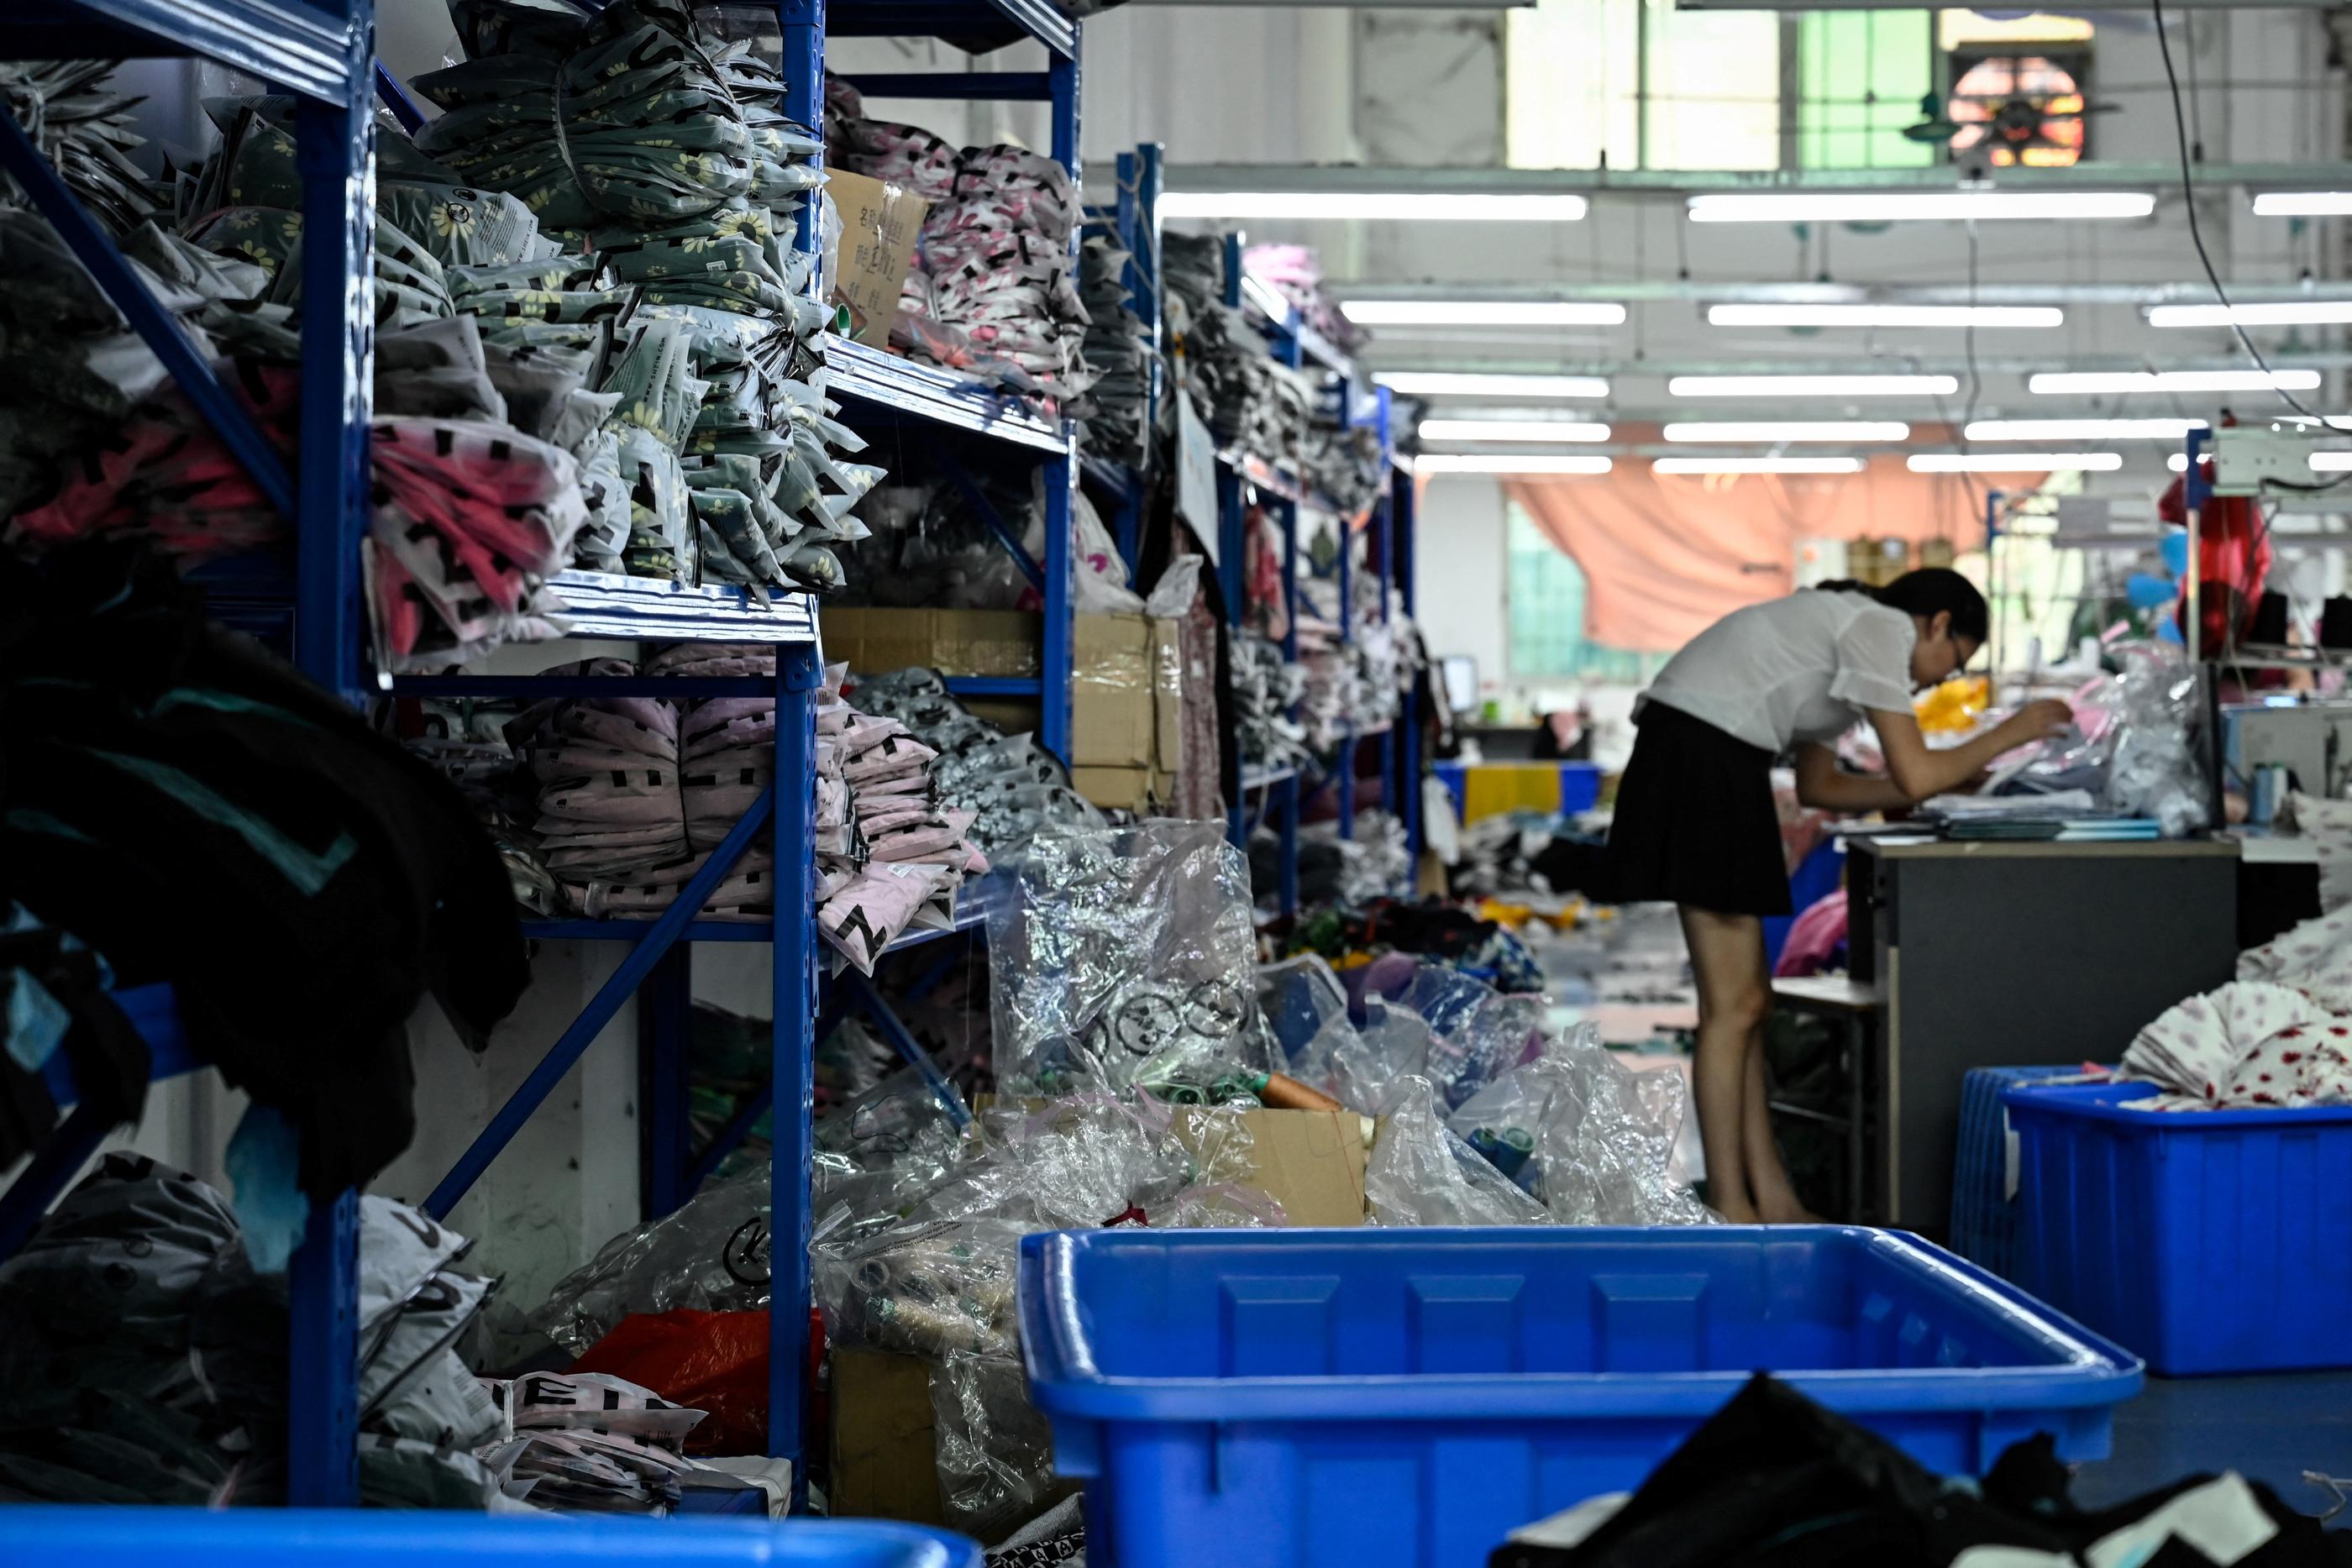 Les sites de vente en ligne qui expédient depuis la Chine, comme Shein (photo), devront s'acquitter de droits de douane quel que soit le montant du colis. Jade Gao / AFP